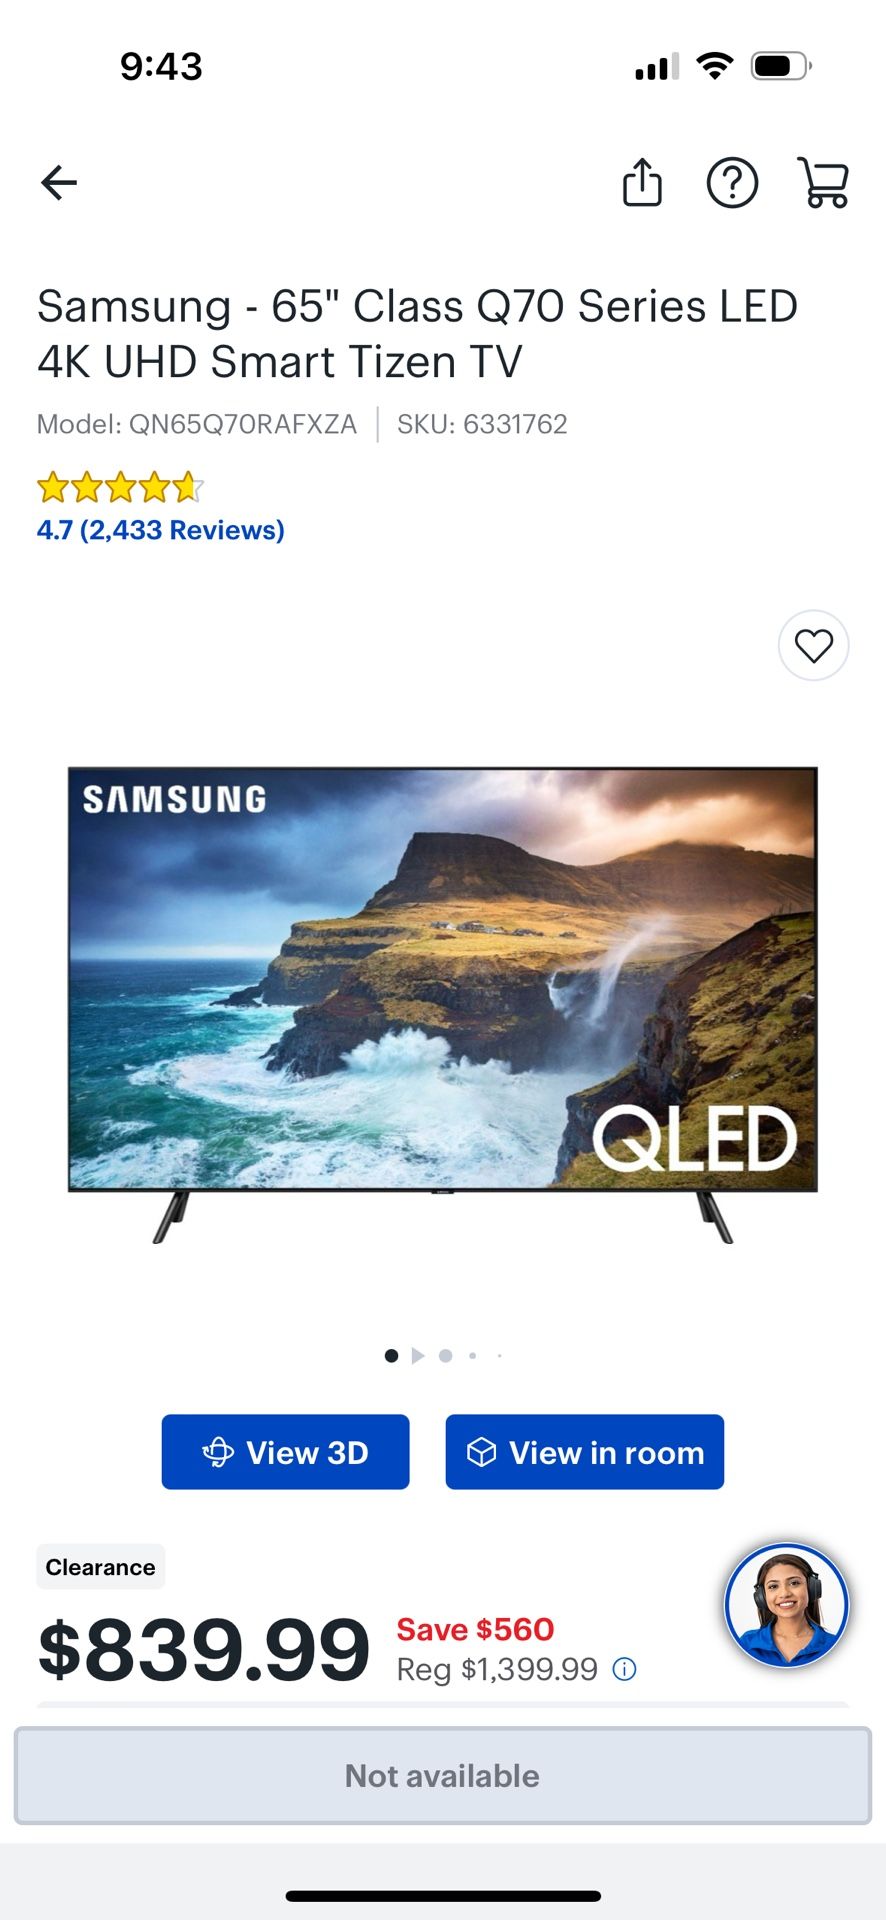 Samsung - 65" Class Q70 Series LED 4K UHD Smart Tizen TV